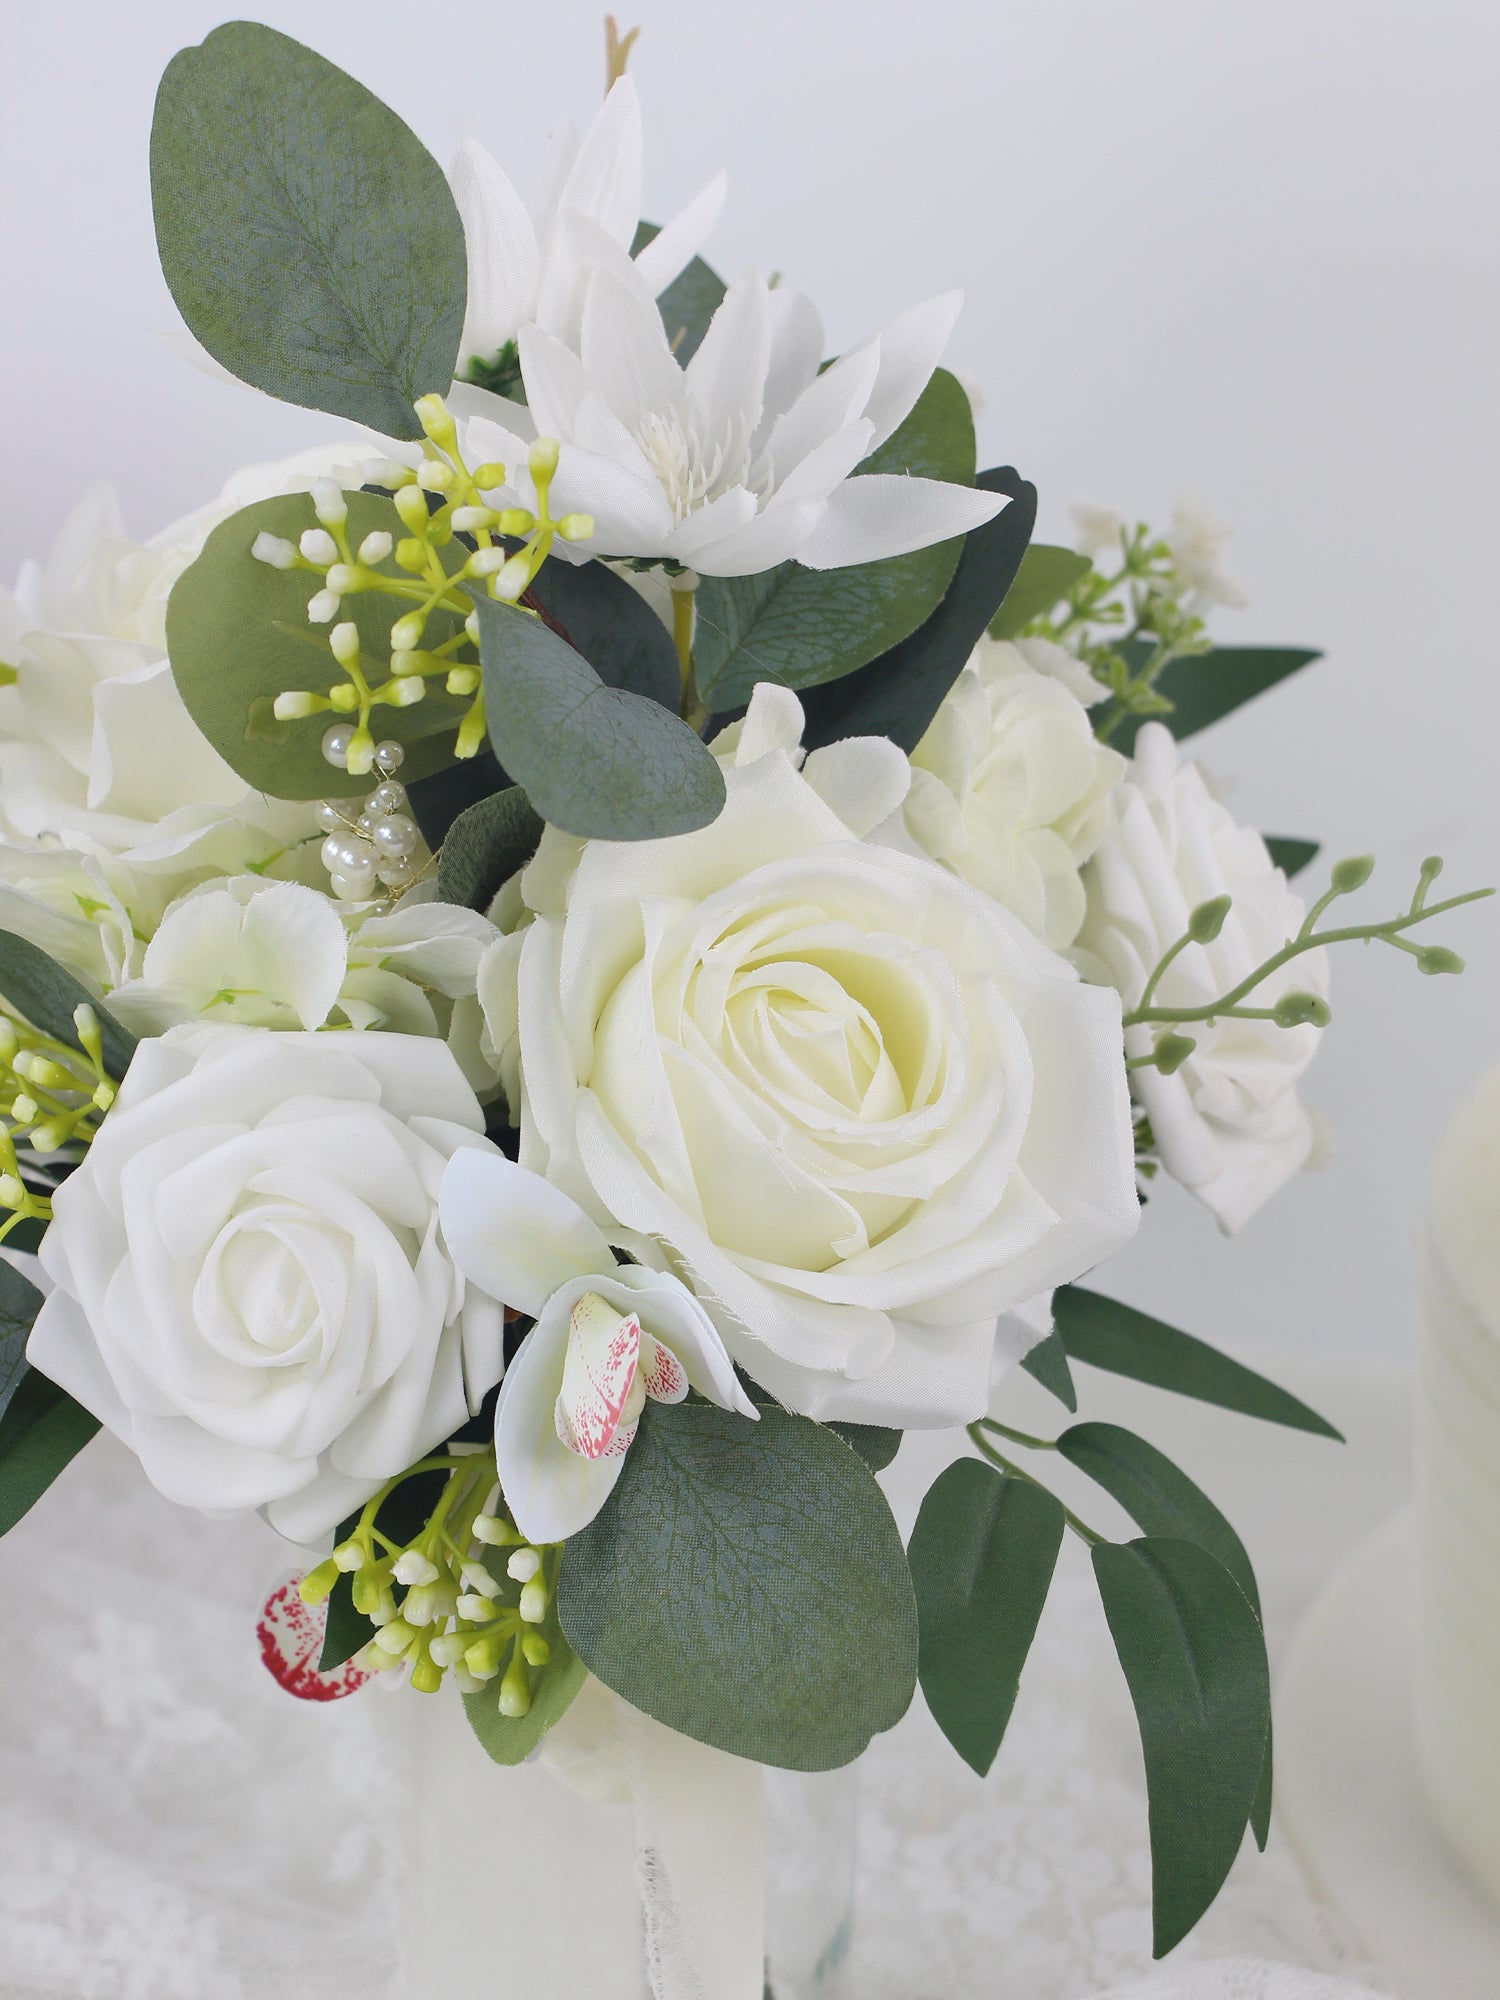 7.8 inch wide Sage Green & White Bridesmaid Bouquet - Rinlong Flower